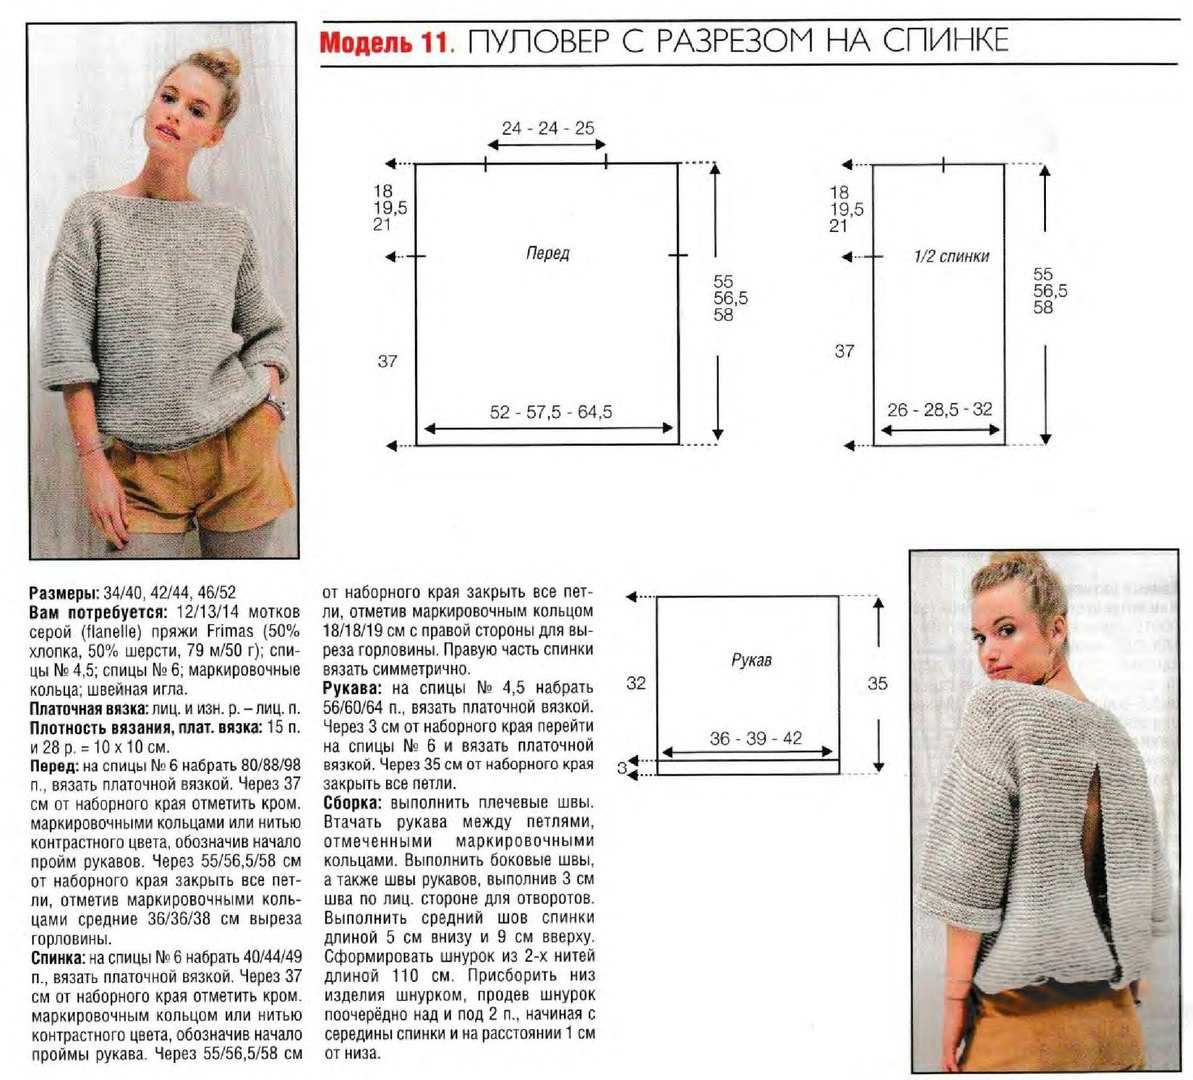 Пуловер спицами. более 40 схем вязания пуловеров для женщин и мужчин спицами